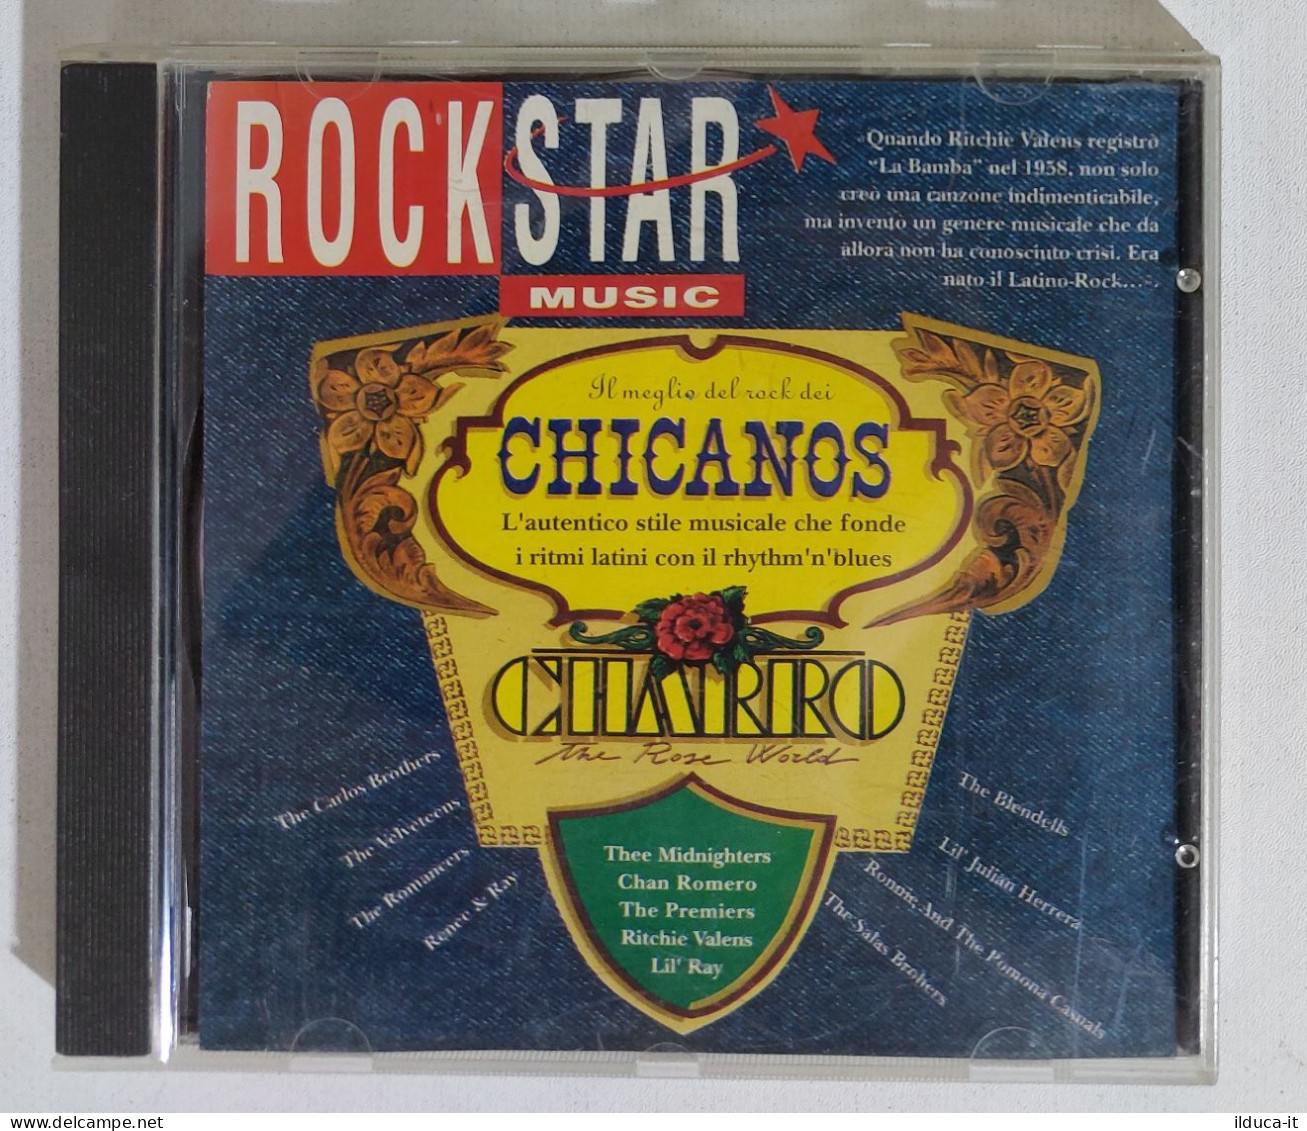 39502 CD - RockStar Music - Chicanos - Compilaciones